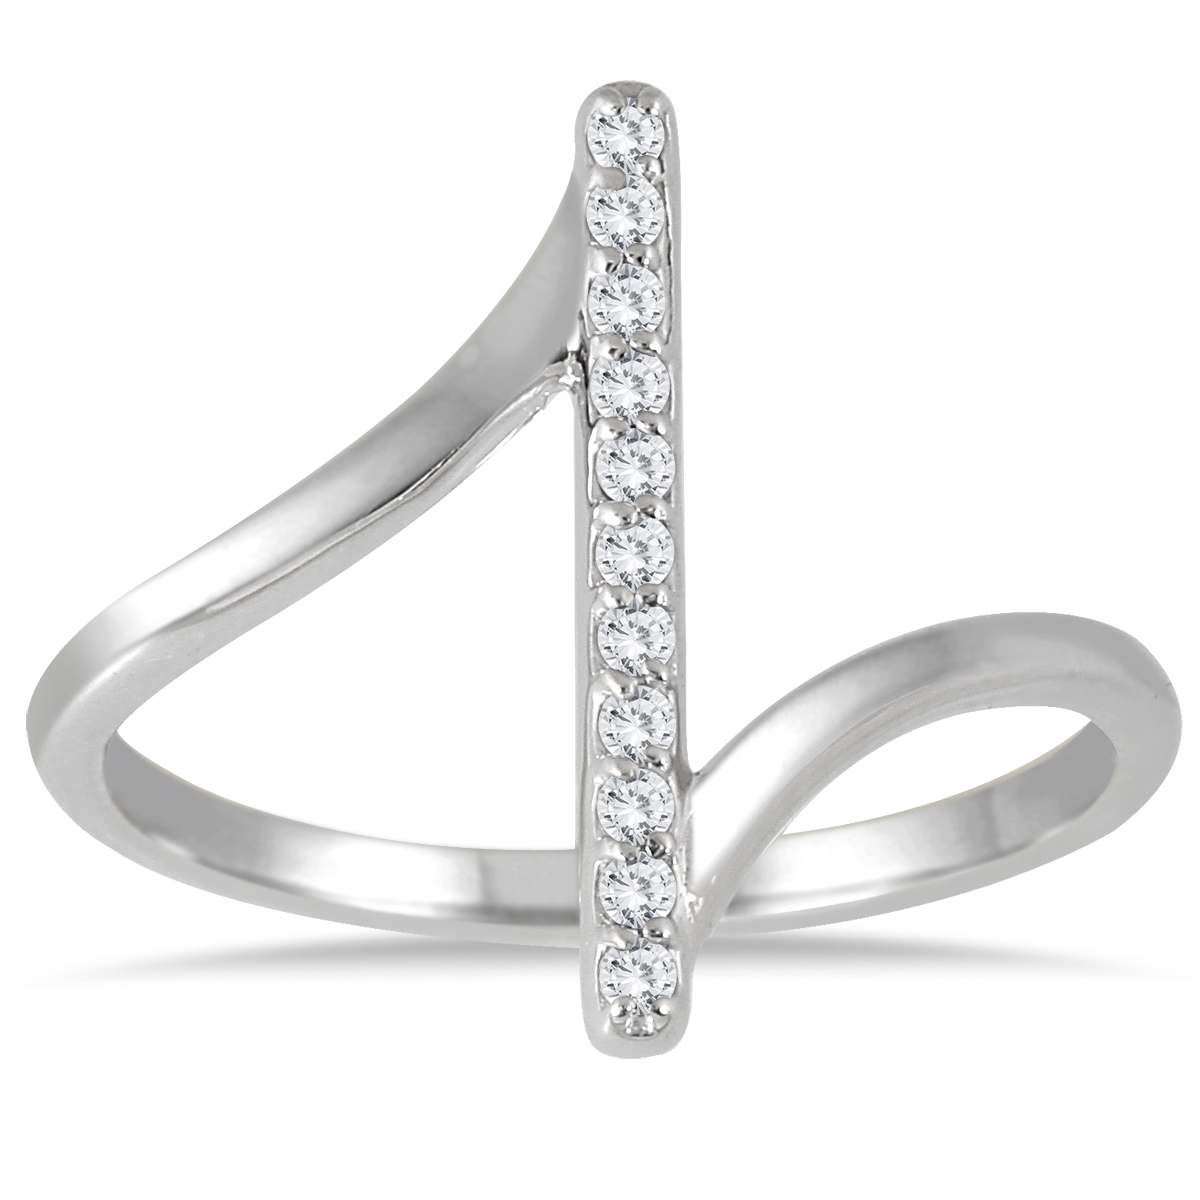 1/8 Carat TW Diamond Bar Ring in 14K White Gold